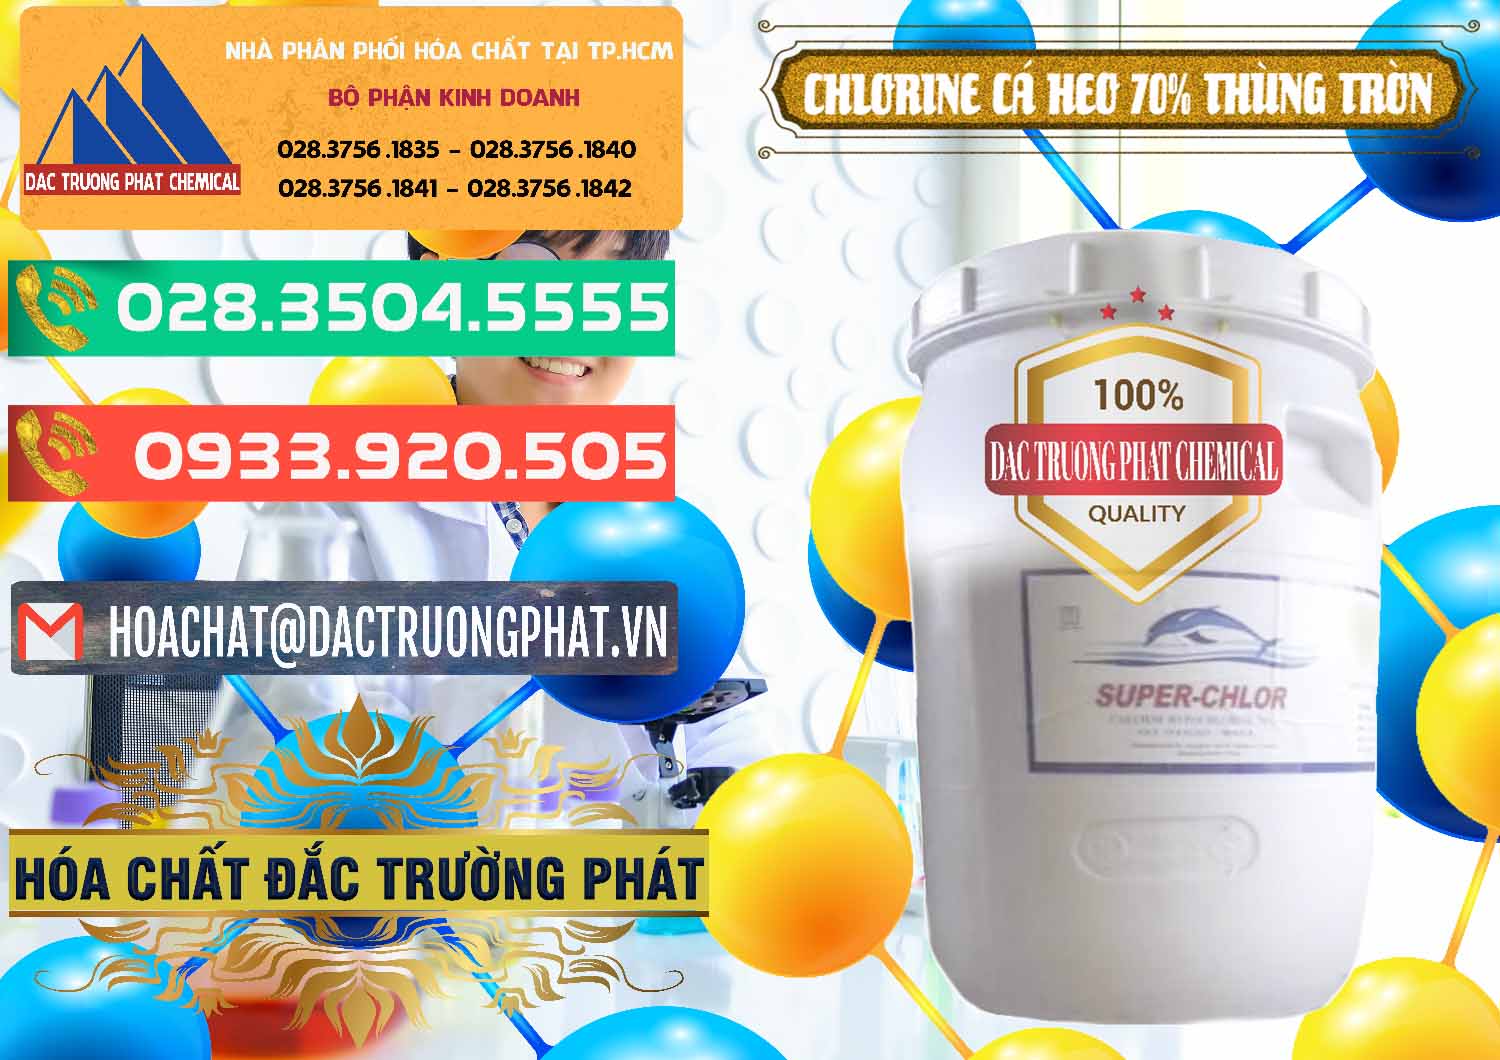 Cty chuyên bán - cung cấp Clorin - Chlorine Cá Heo 70% Super Chlor Thùng Tròn Nắp Trắng Trung Quốc China - 0239 - Cty cung cấp & nhập khẩu hóa chất tại TP.HCM - congtyhoachat.com.vn